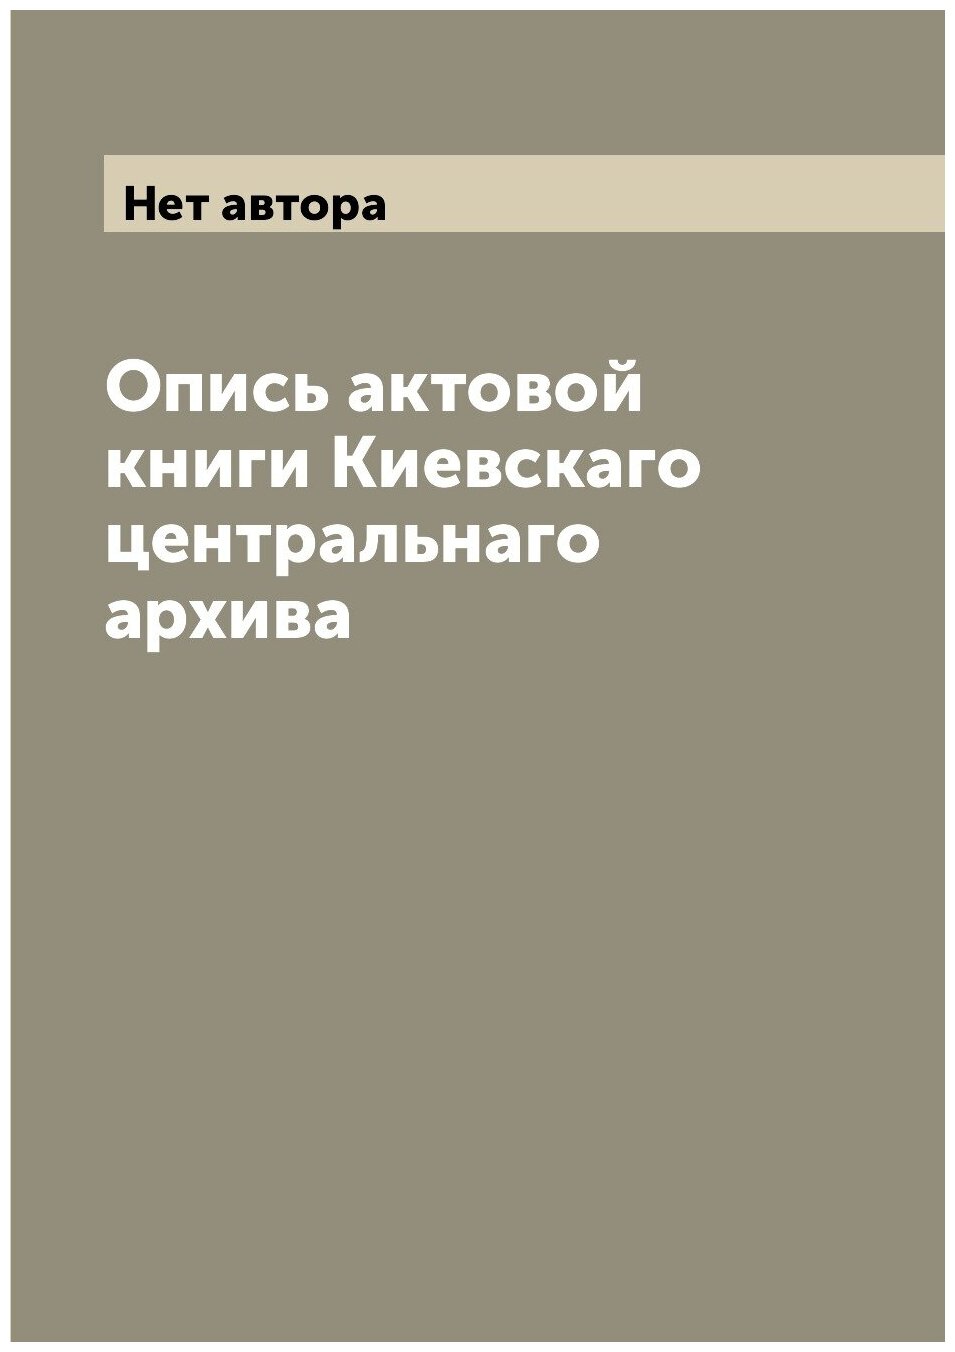 Опись актовой книги Киевскаго центральнаго архива